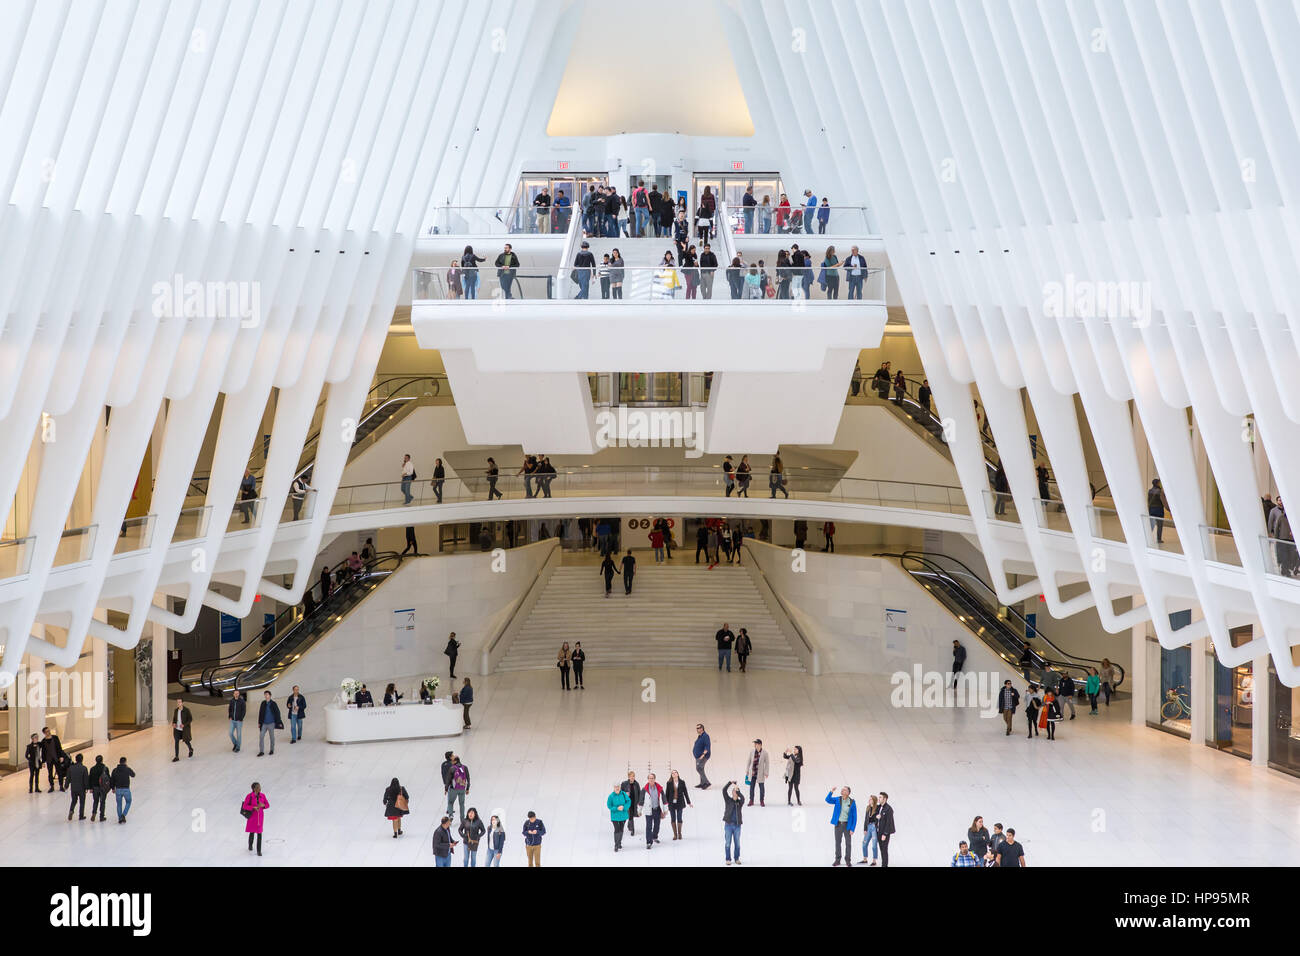 La vista desde la entrada a nivel del suelo para el Oculus World Trade Center Centro de transporte en la Ciudad de Nueva York. Foto de stock